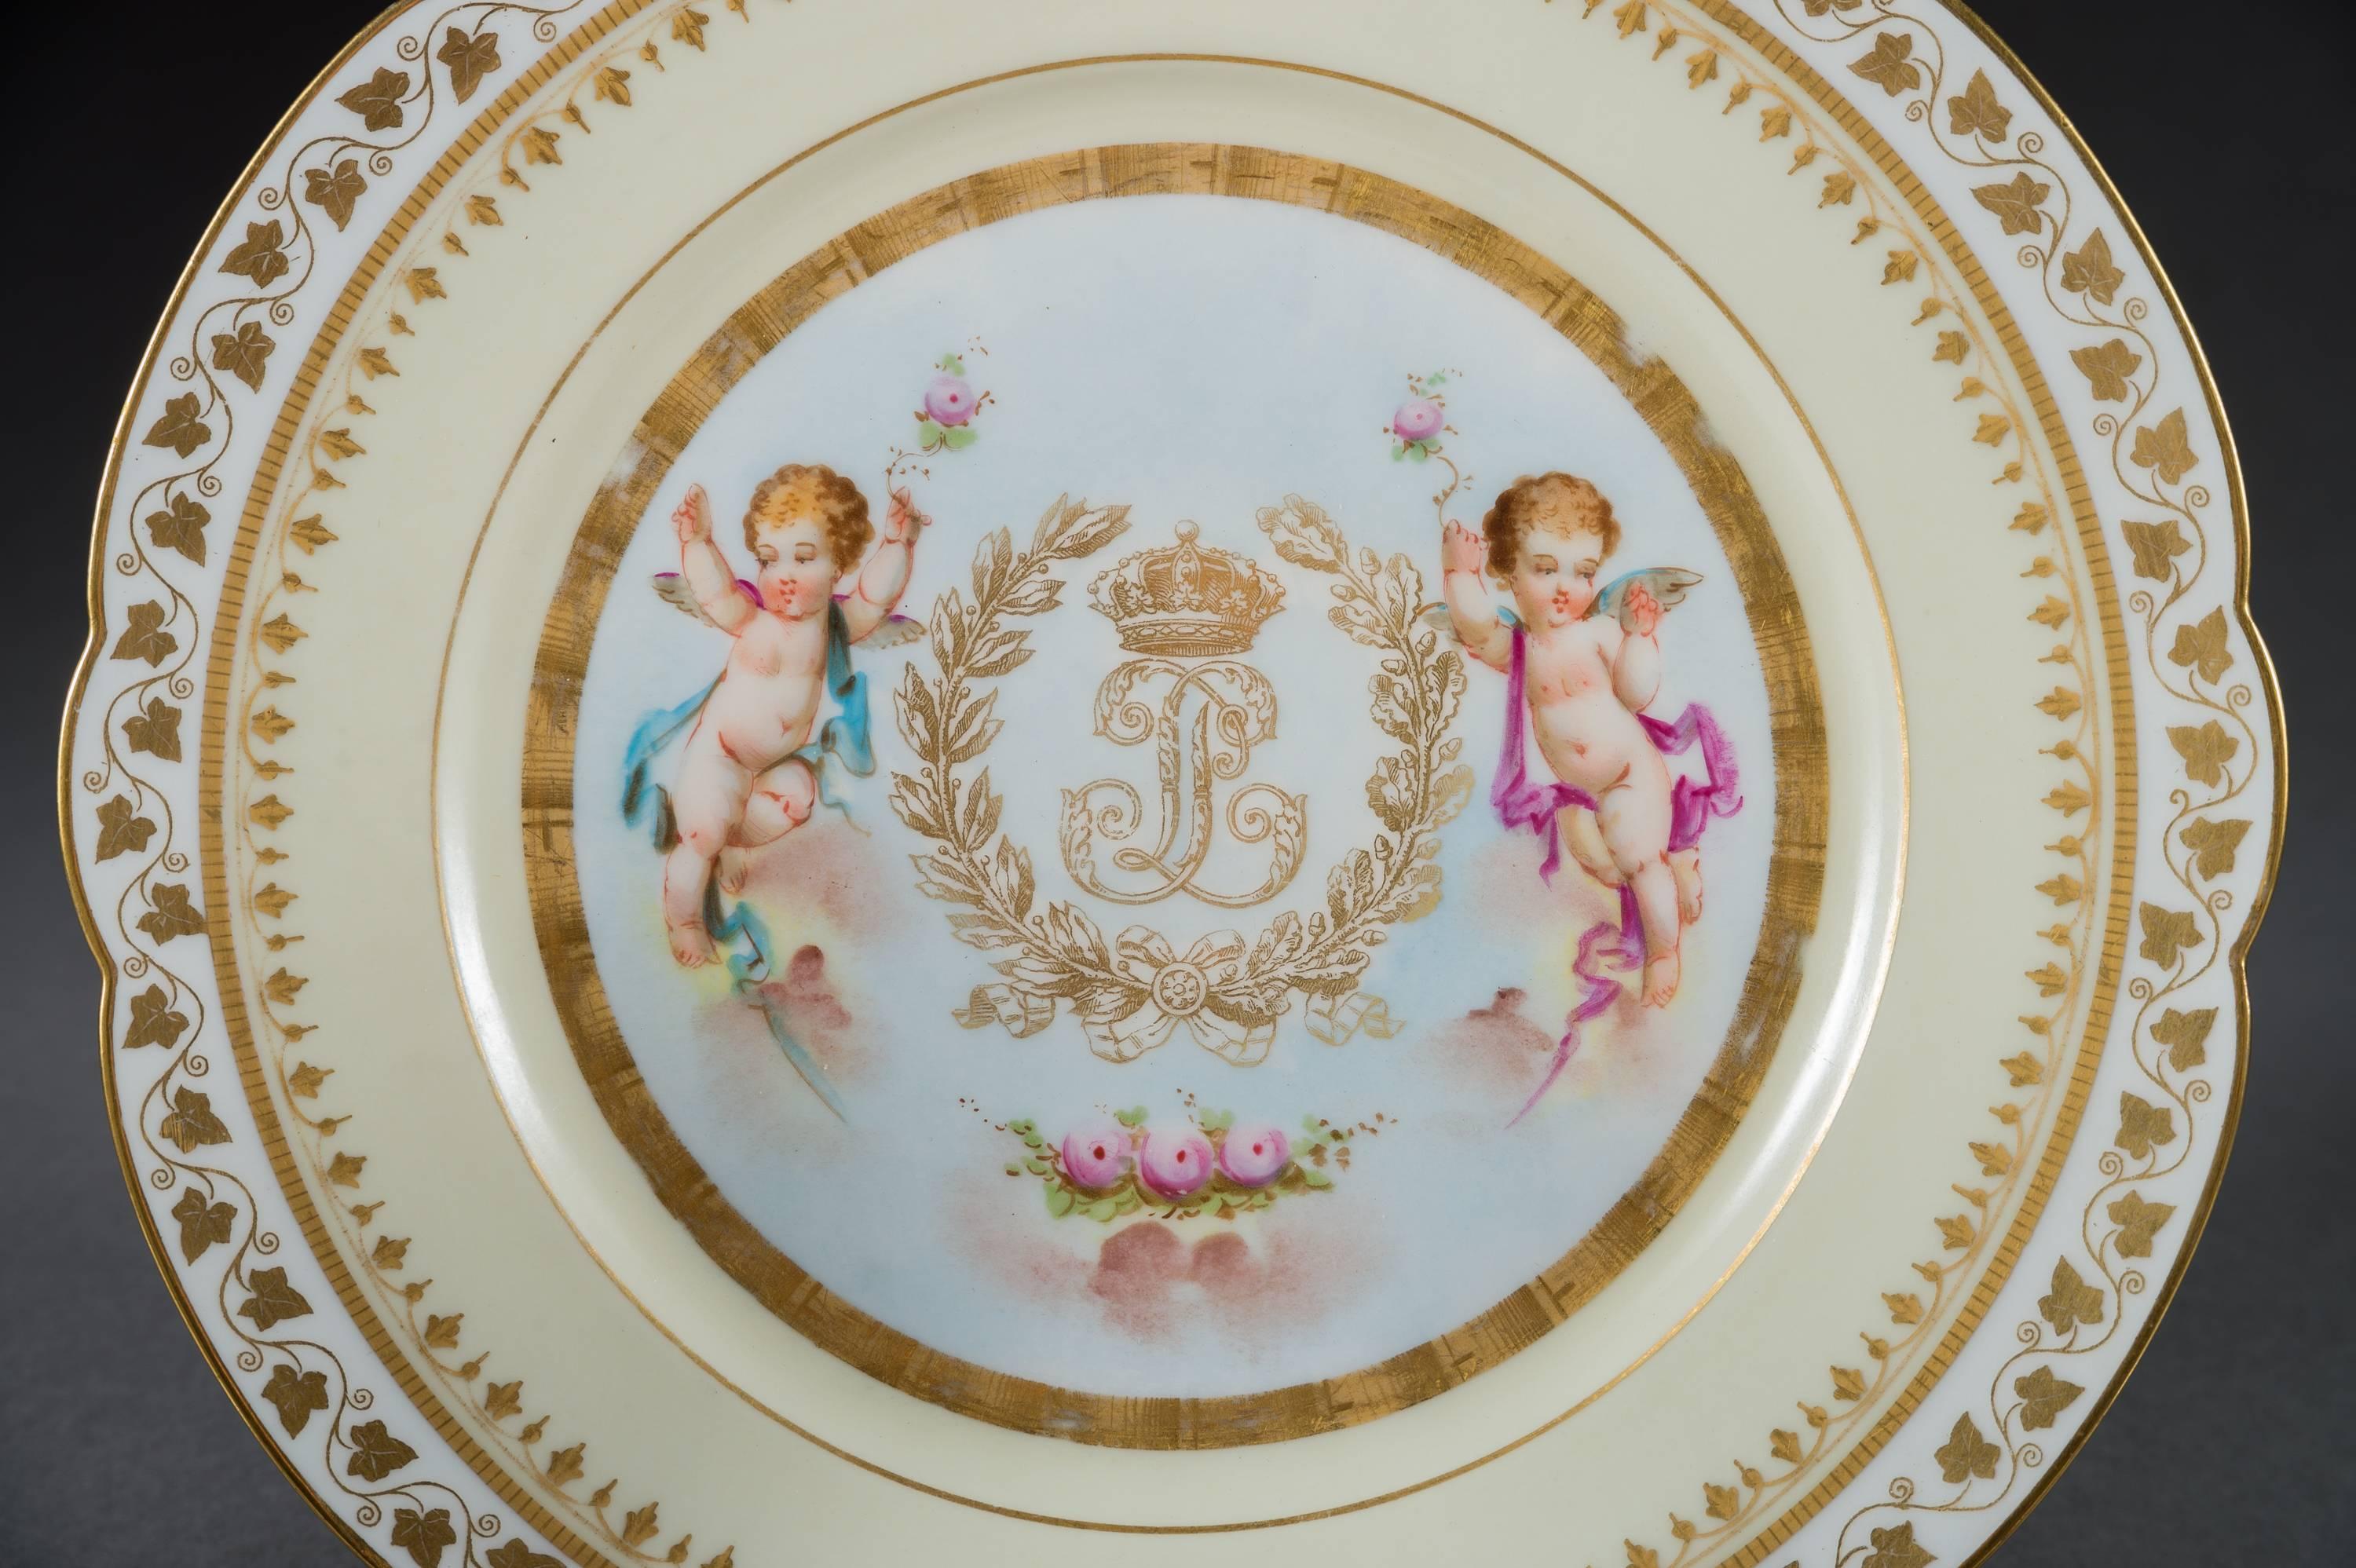 Un très bel ensemble de douze (12) assiettes en porcelaine de Sèvres peinte et ornée de bijoux. 

Chacun avec une bordure or et rose avec une peinture centrale représentant des chérubins avec une guirlande de fleurs, avec des armoiries royales en